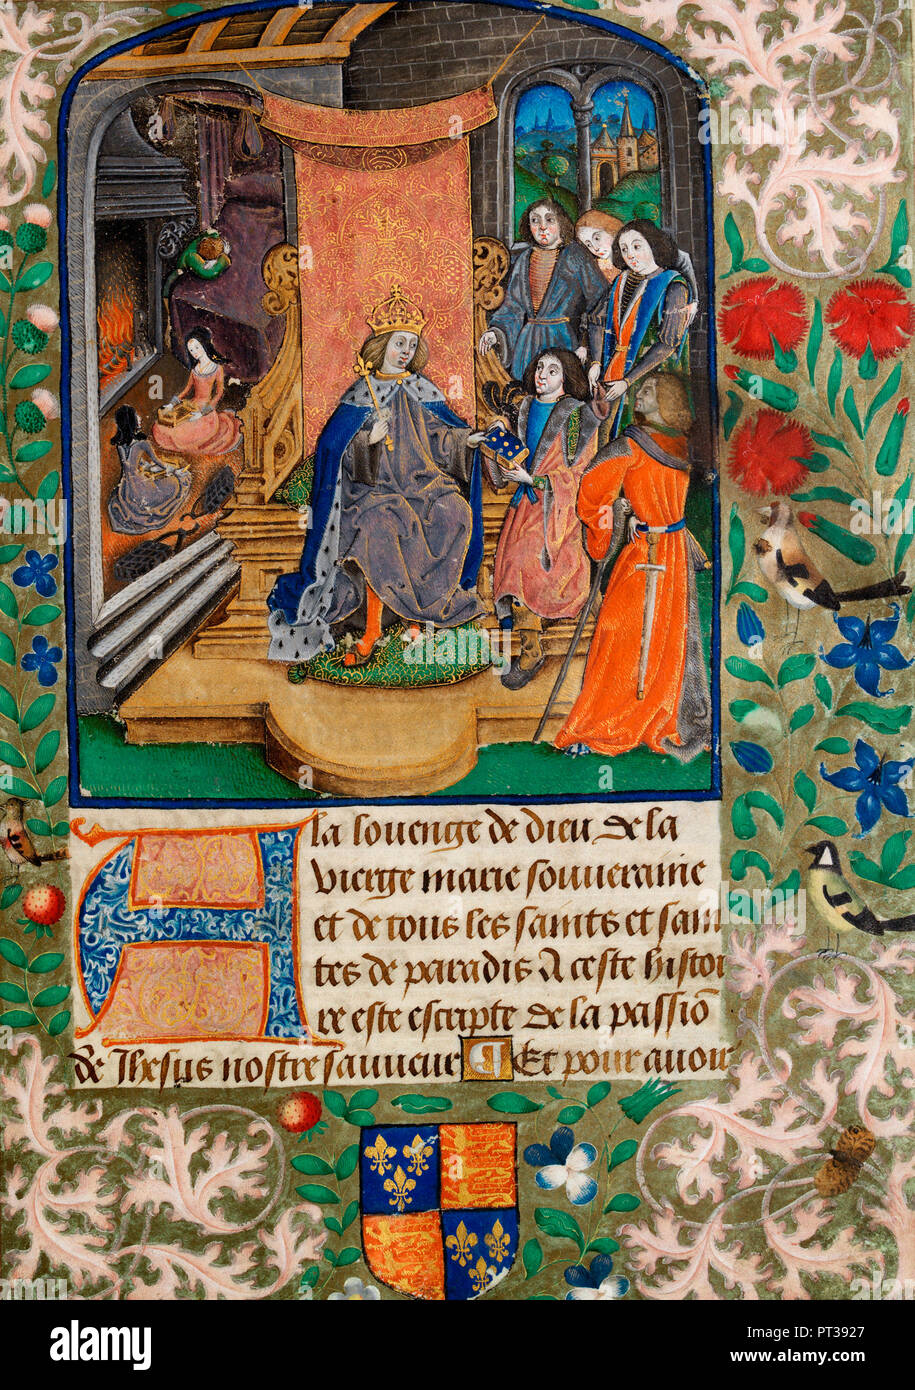 Enrico VII di ricezione (questo manoscritto) come un dono. Sullo sfondo a sinistra in alto è Enrico VIII come un bambino piange per la morte di sua madre. Le sue sorelle Maria e Margaret sit in primo piano - Vaux passionale, circa 1503 Foto Stock